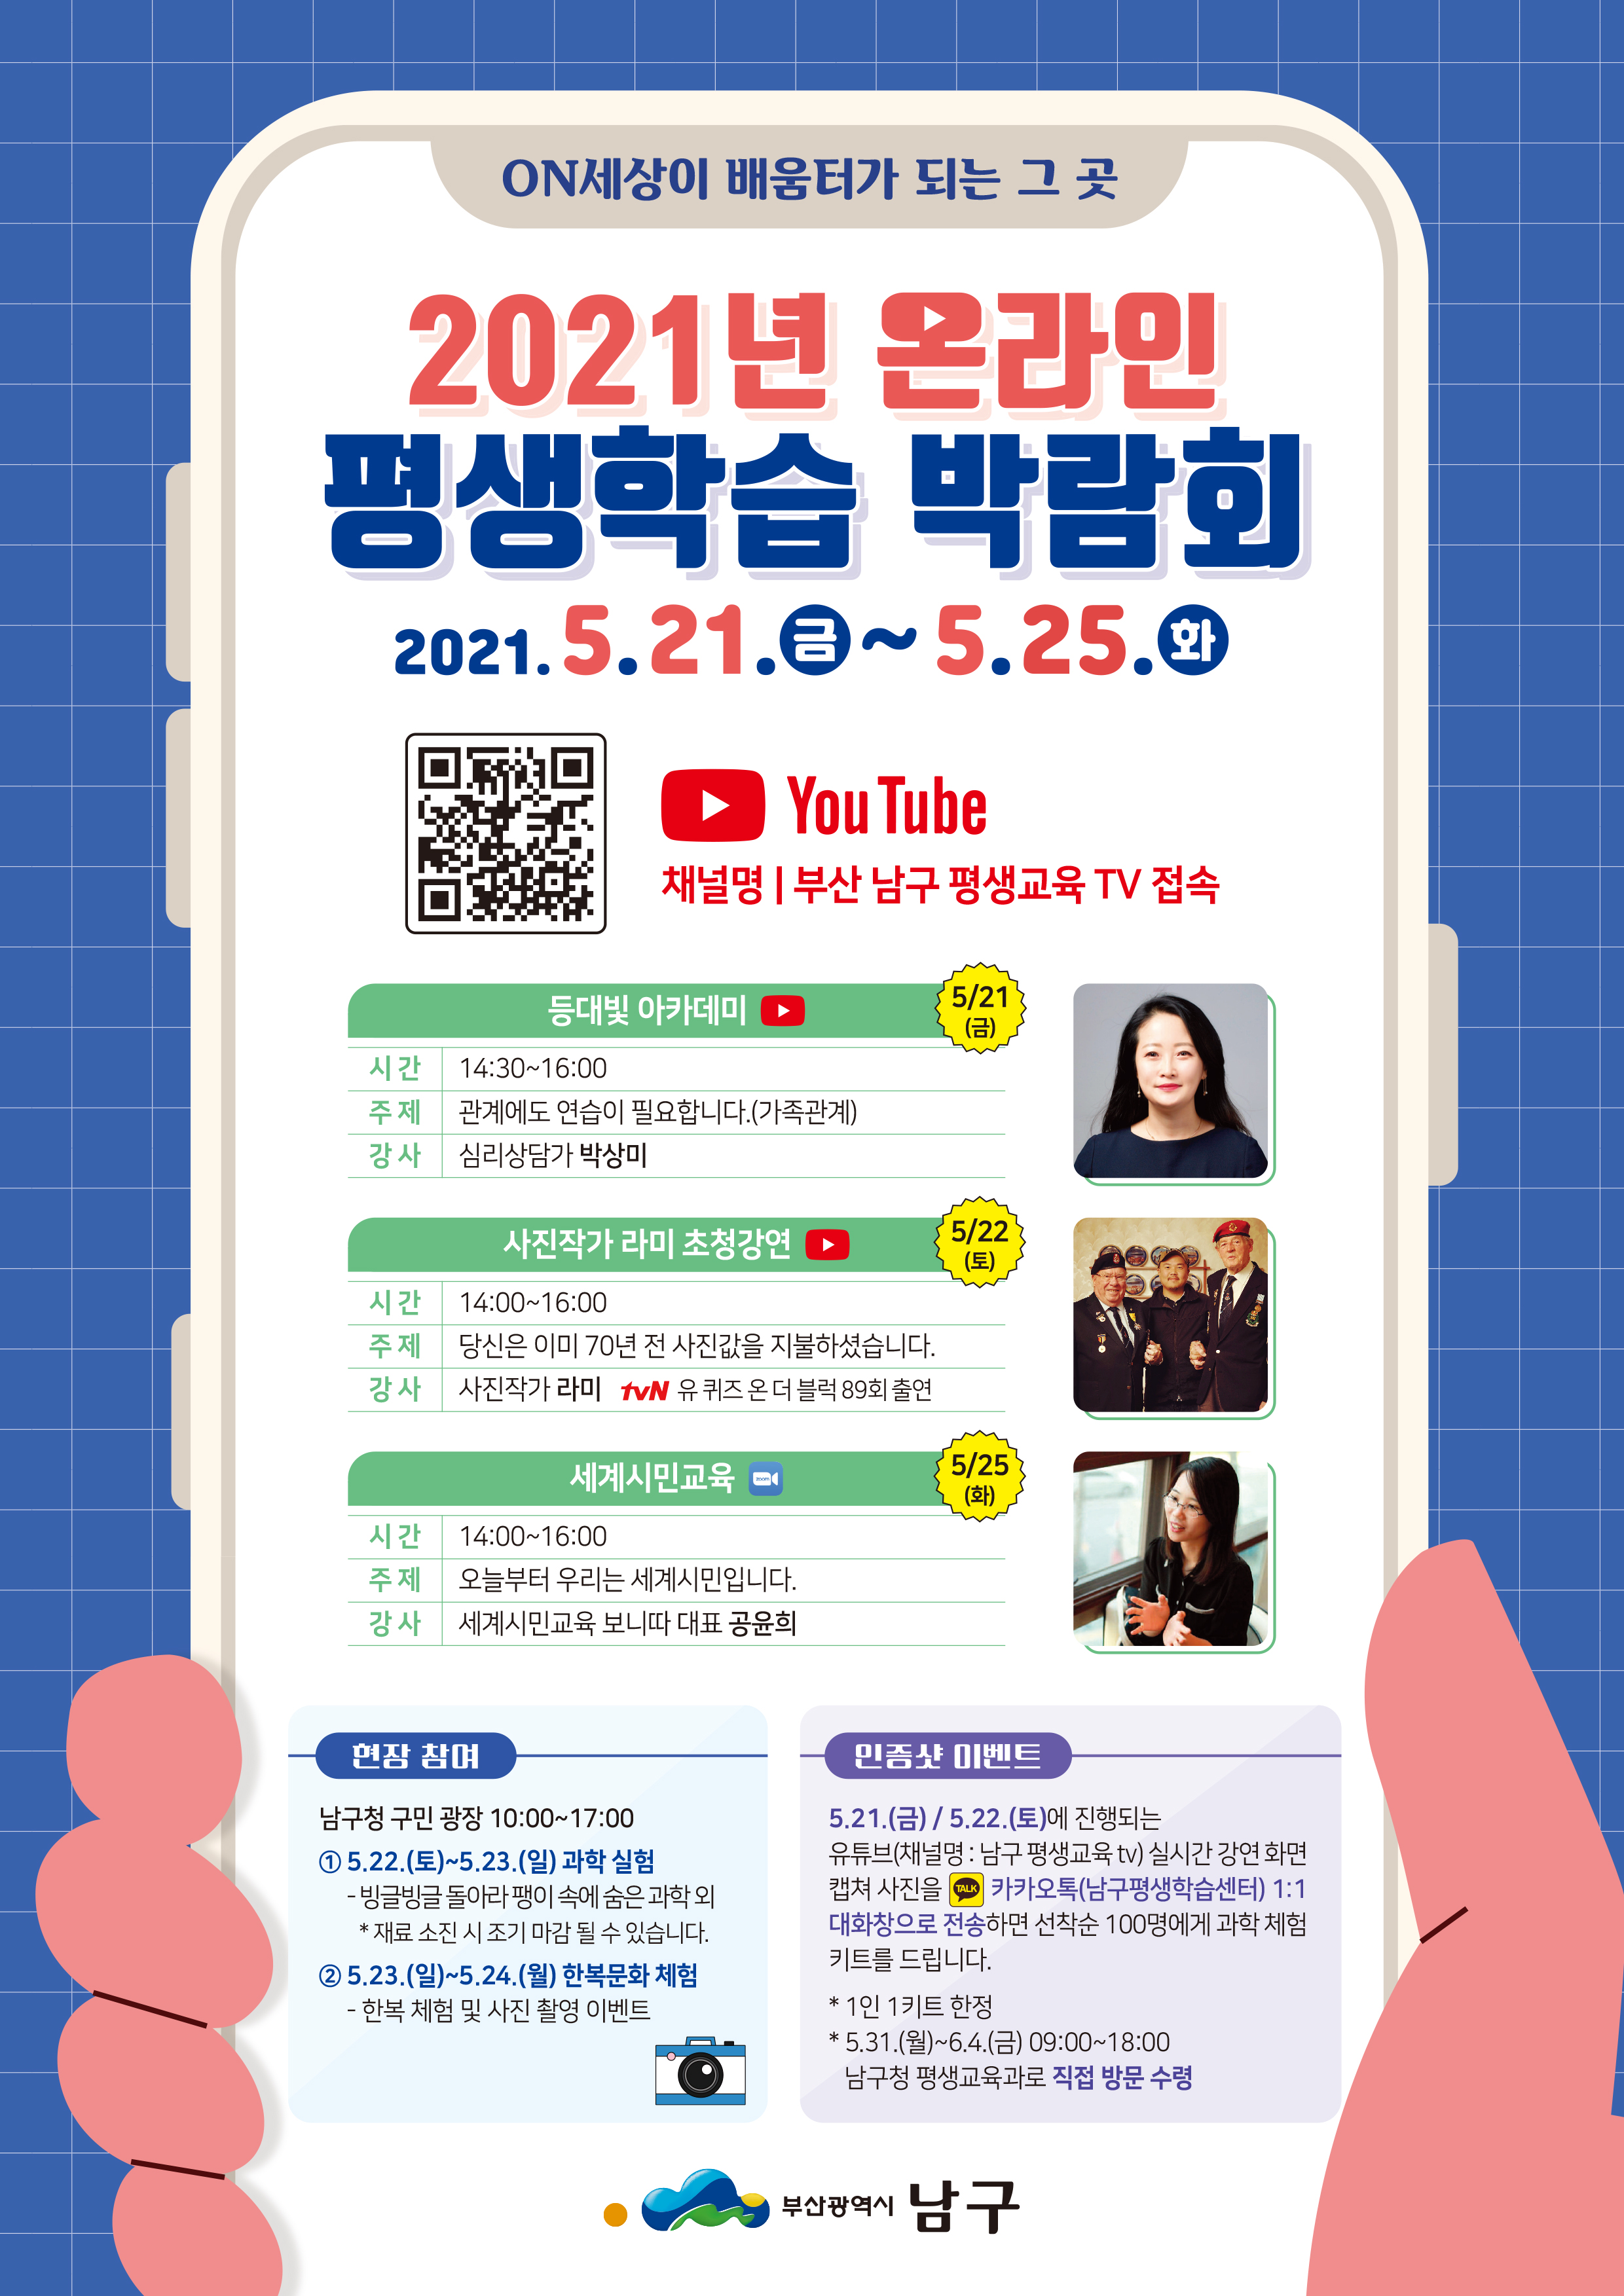 「2021년 온라인 평생학습 박람회」 개최0